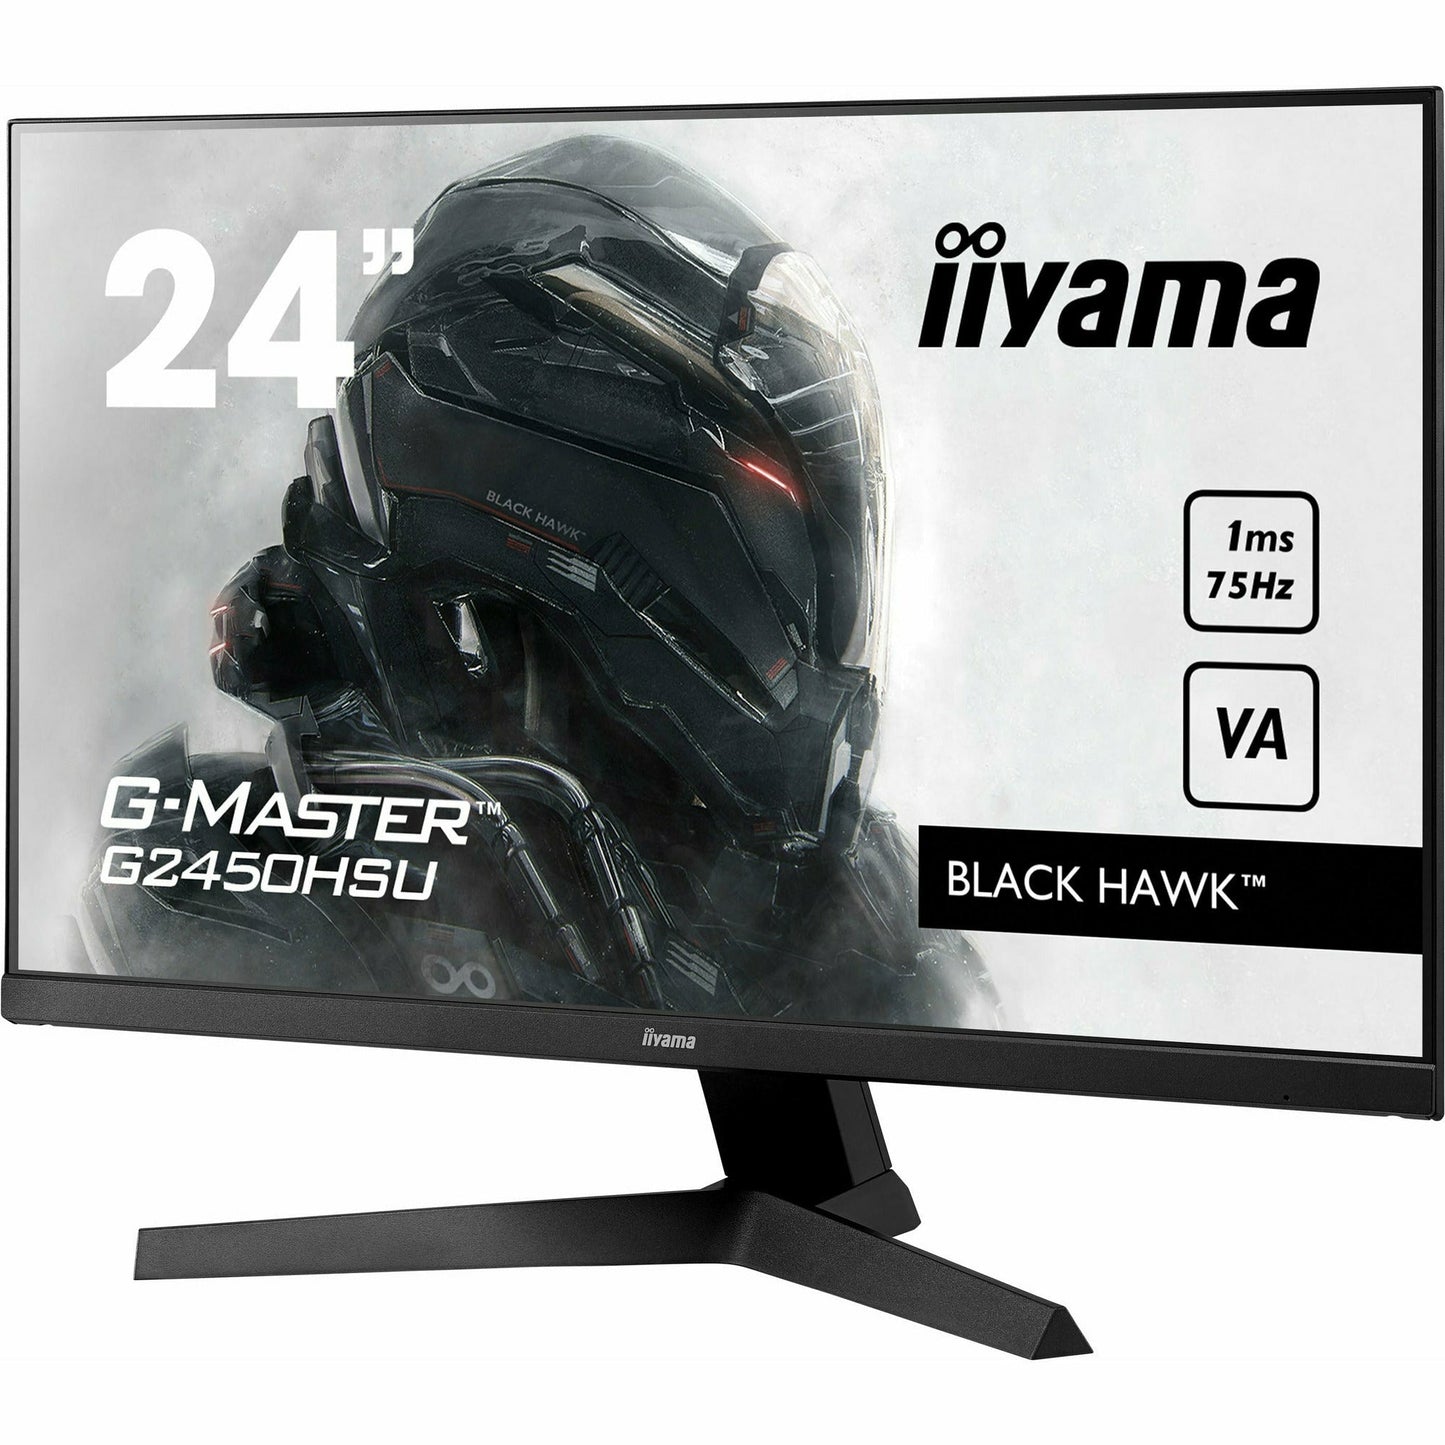 Dark Slate Gray iiyama G-Master G2450HSU-B1 24" VA LCD Black Hawk Gaming Monitor